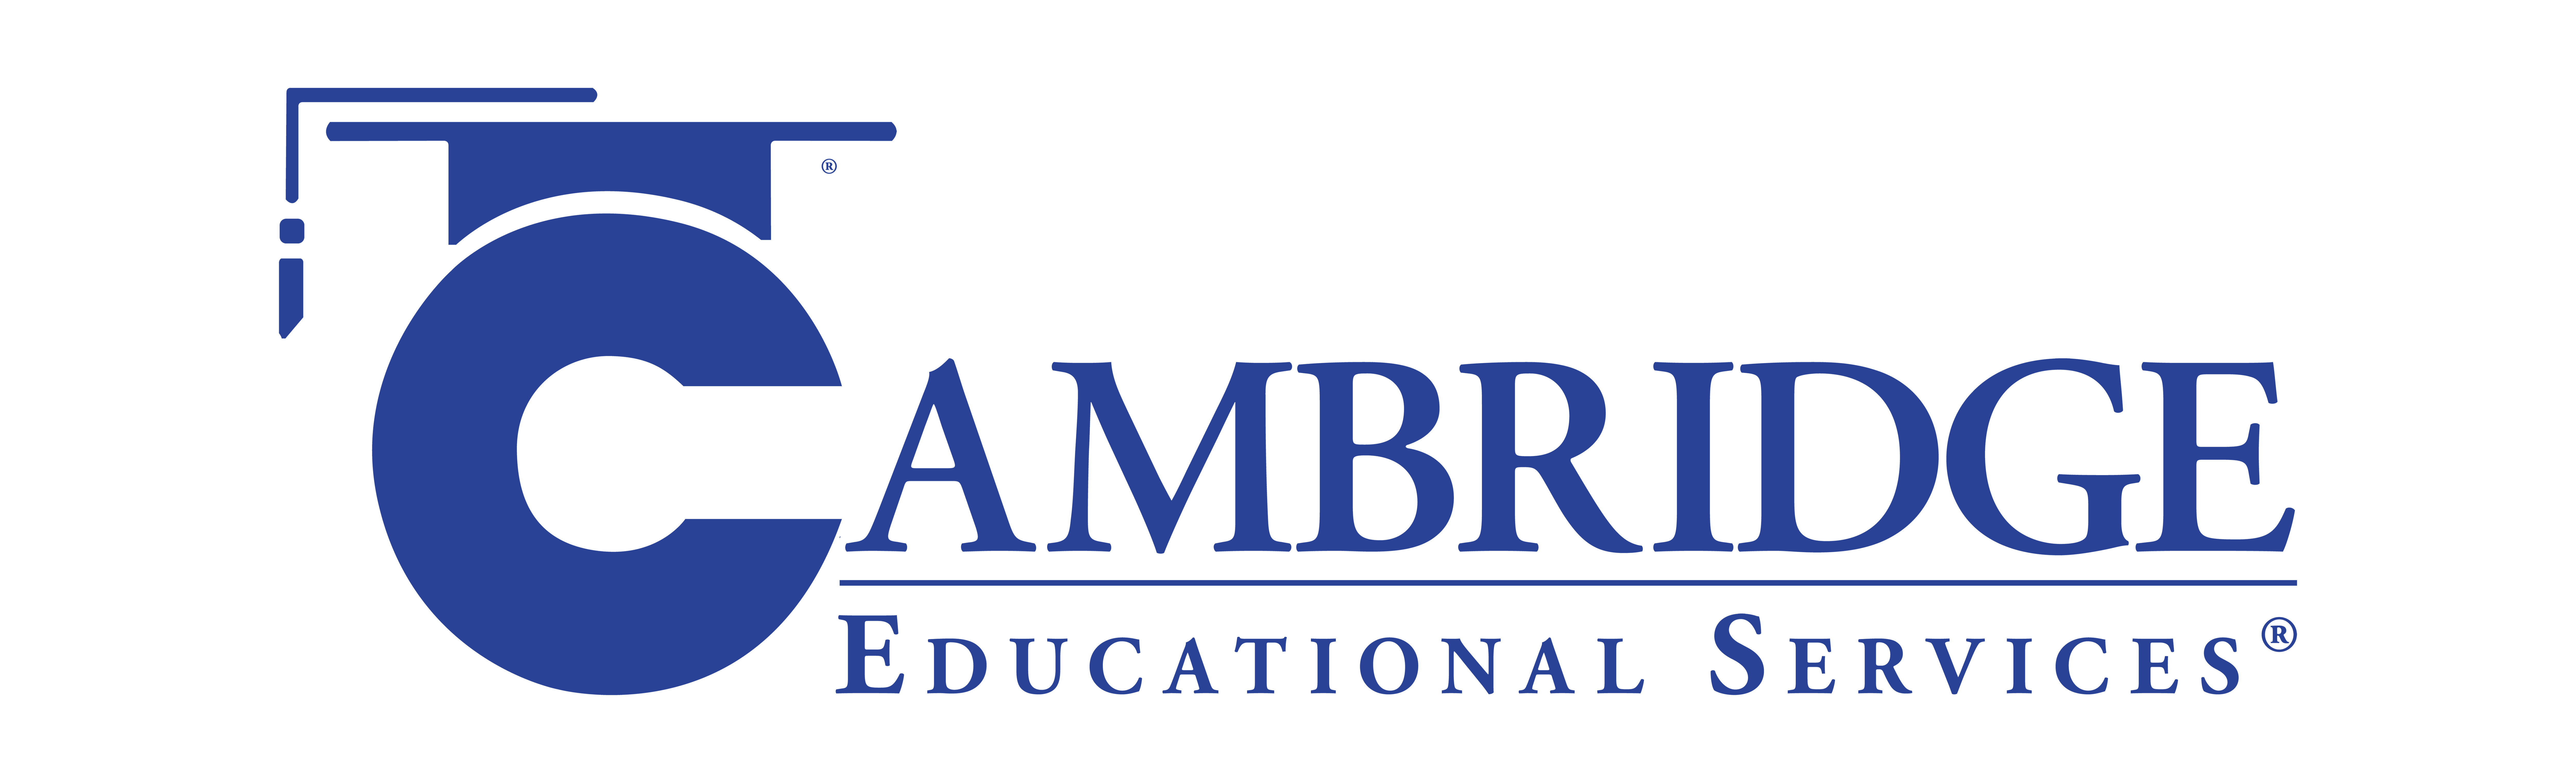 Cambridge Educational Services logo